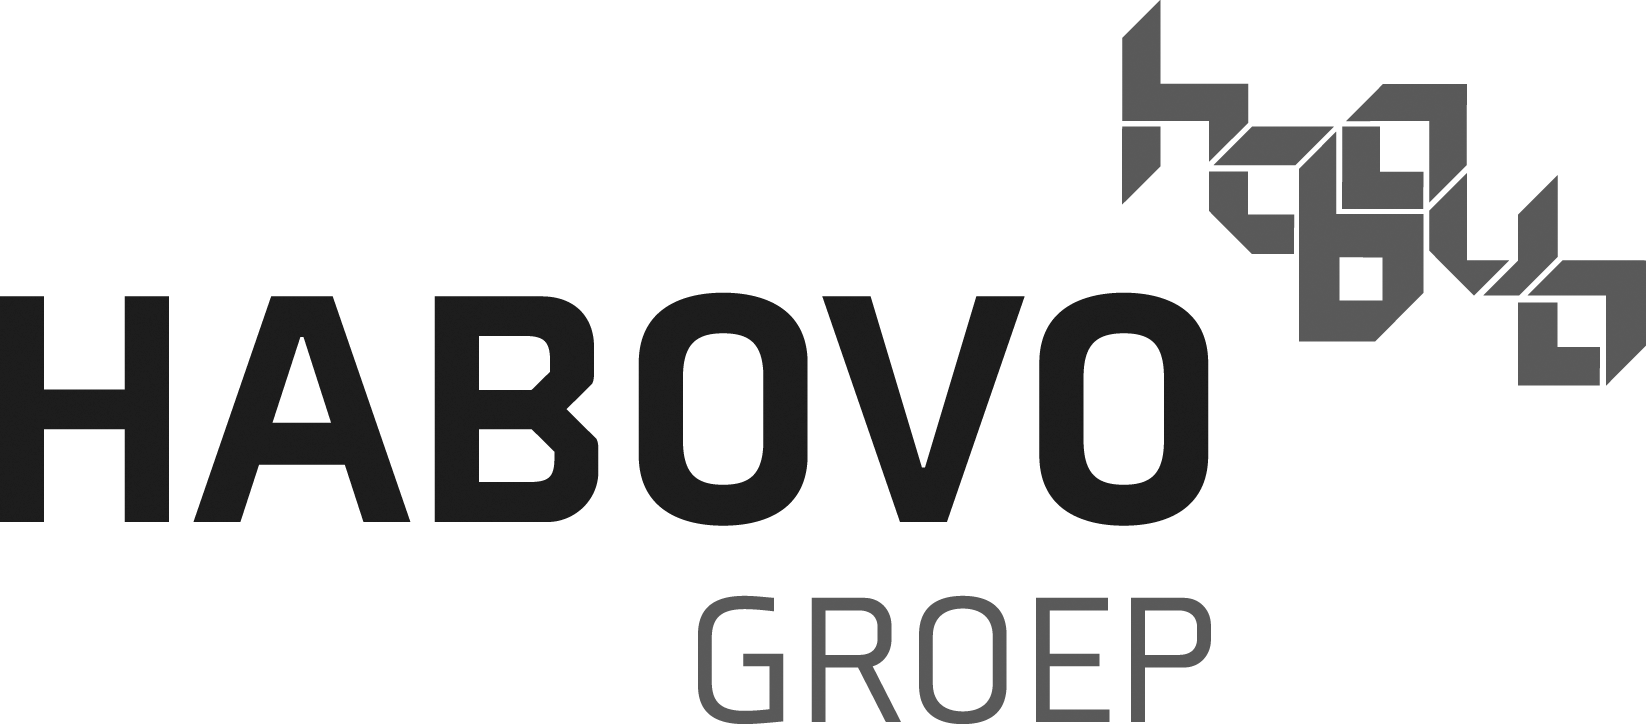 Habovo-logo-kyp